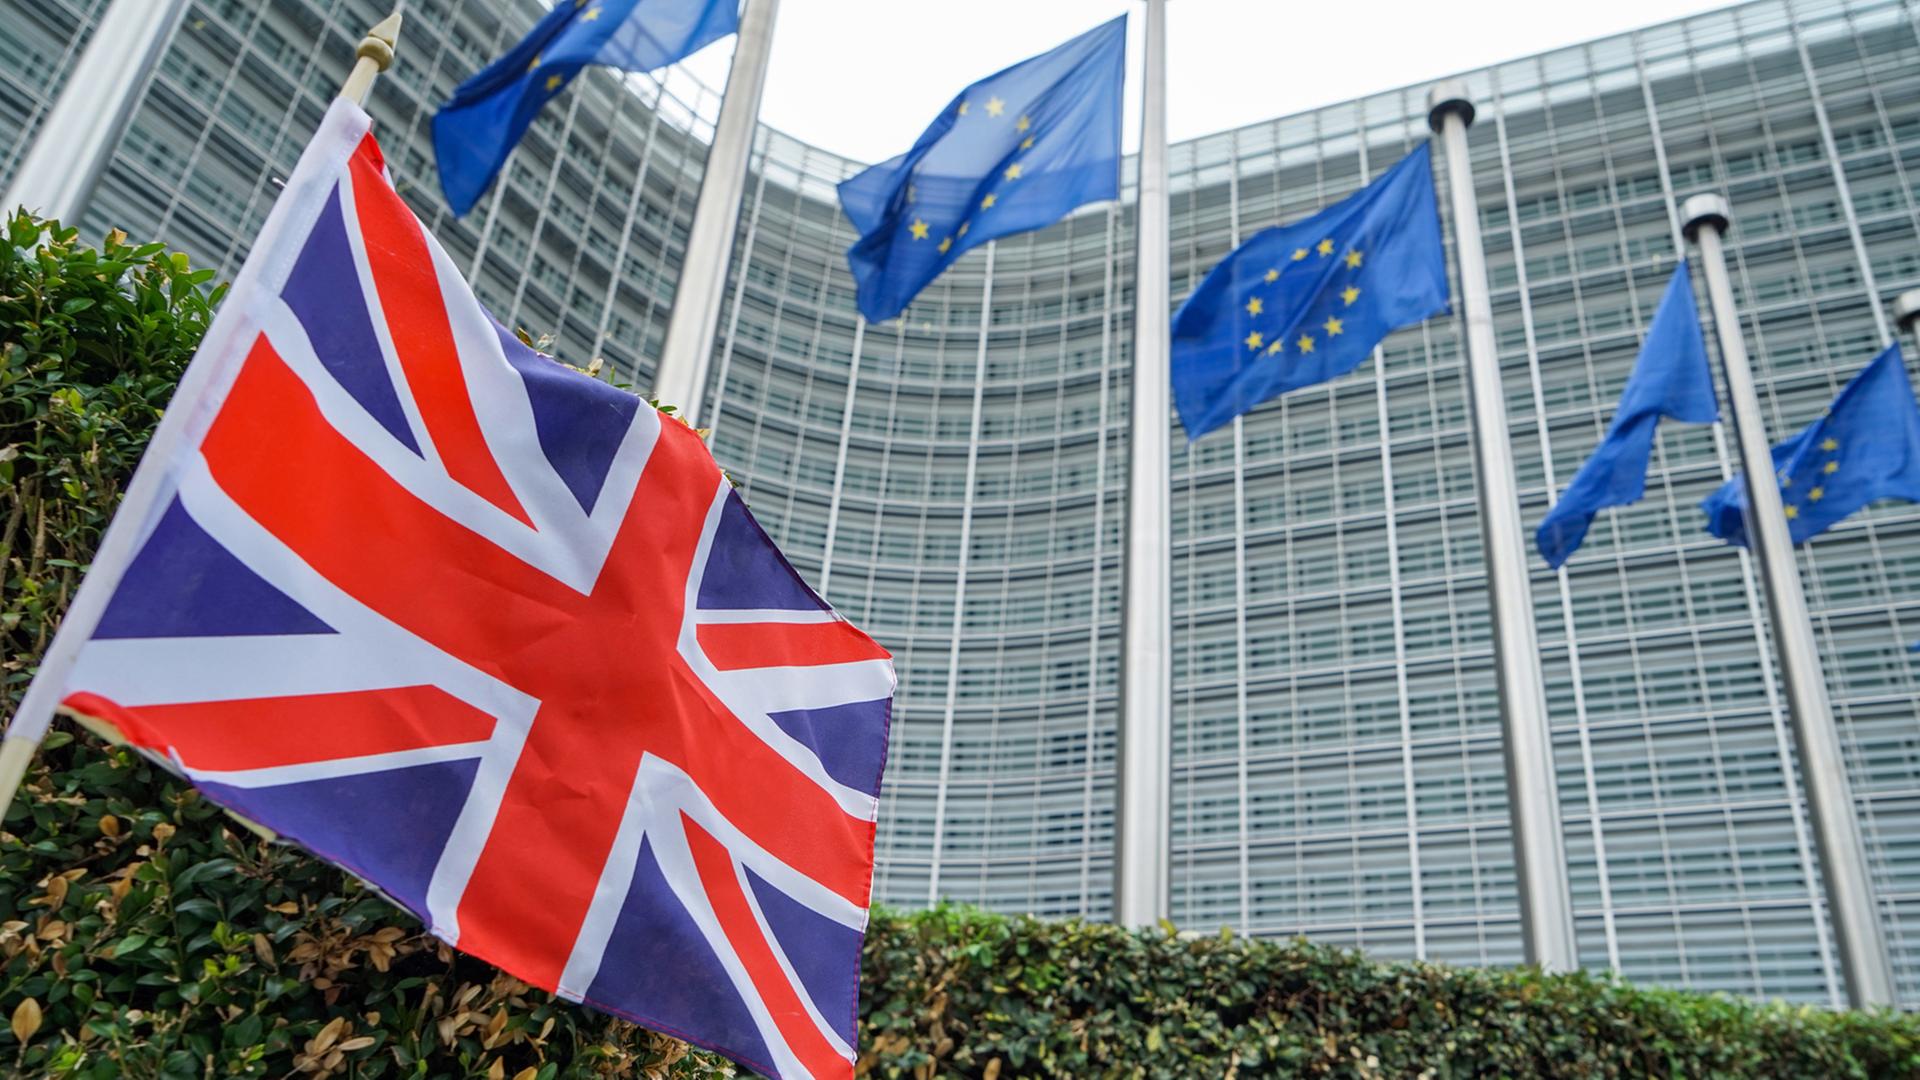 Fahne der EU vor der Europäischen Kommission in Brüssel und eine kleine Fahne Großbritanniens